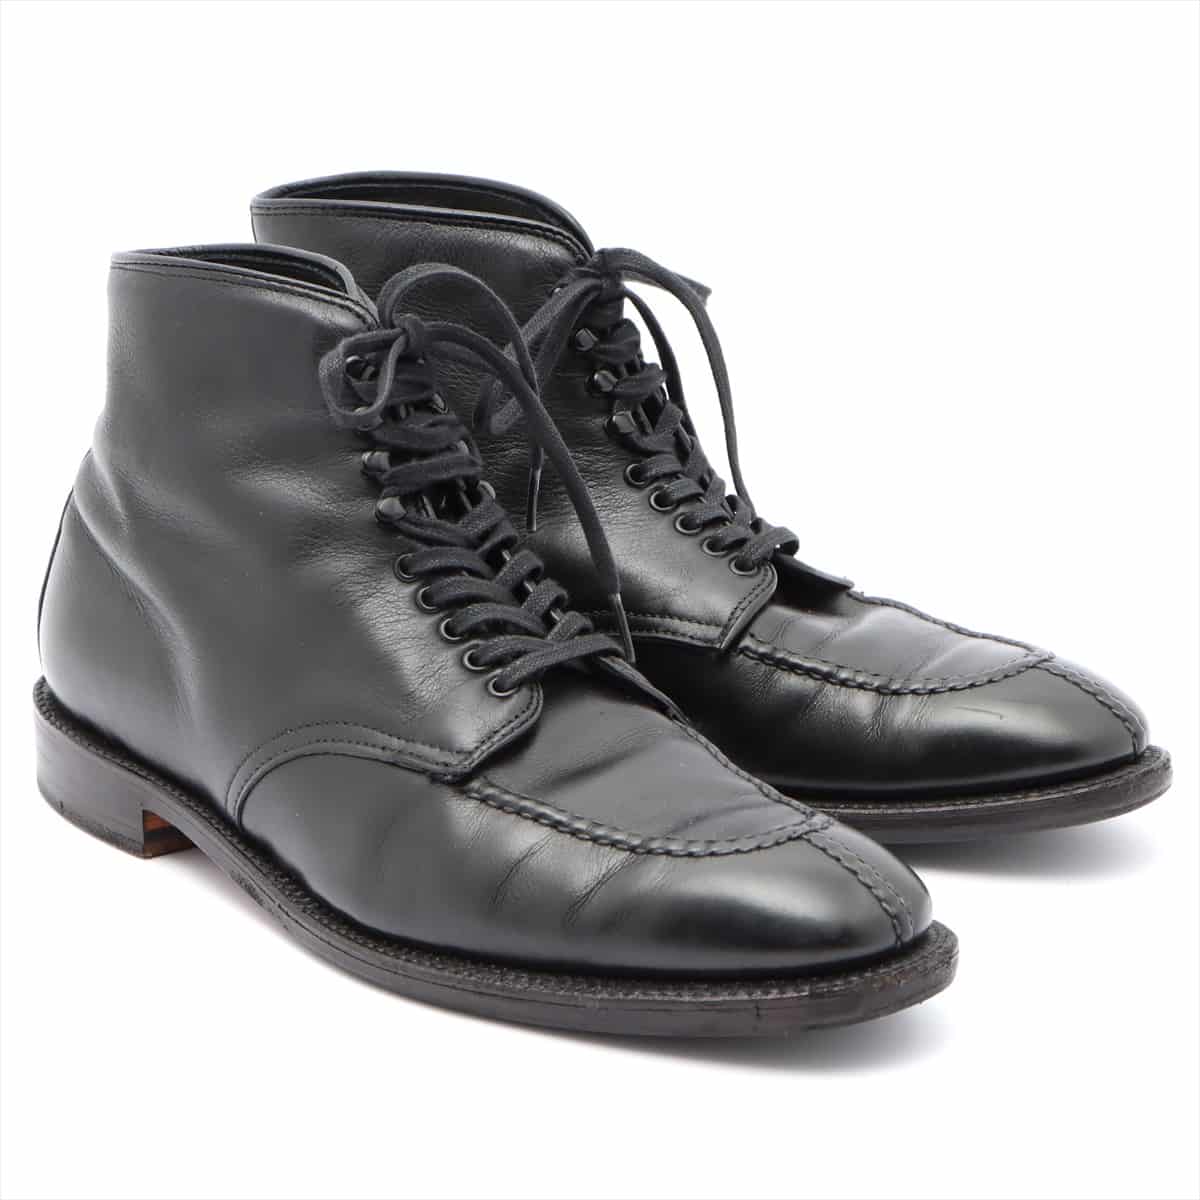 Alden Leather Boots 9 Men's Black Tanker